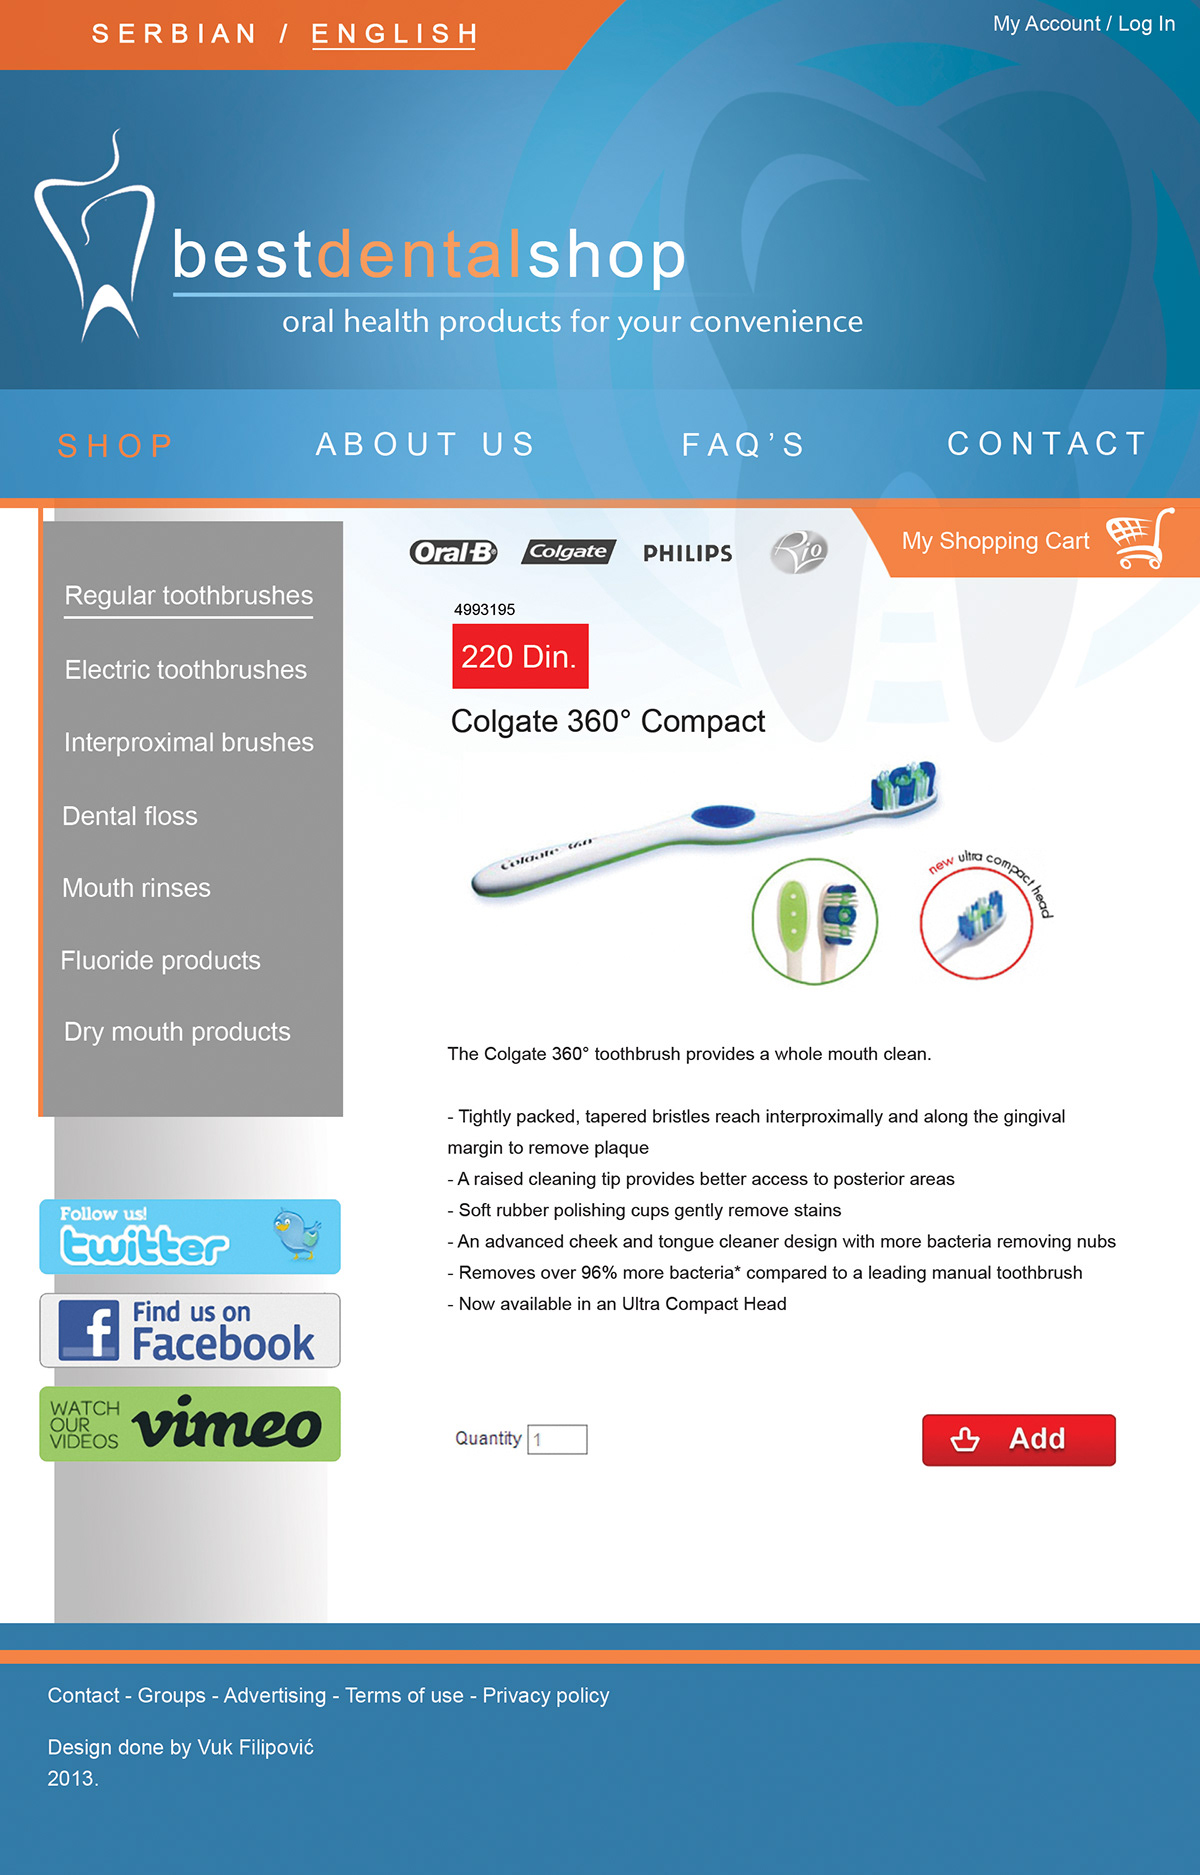 Web dental shop design logo newsletter banner graphic Kodent